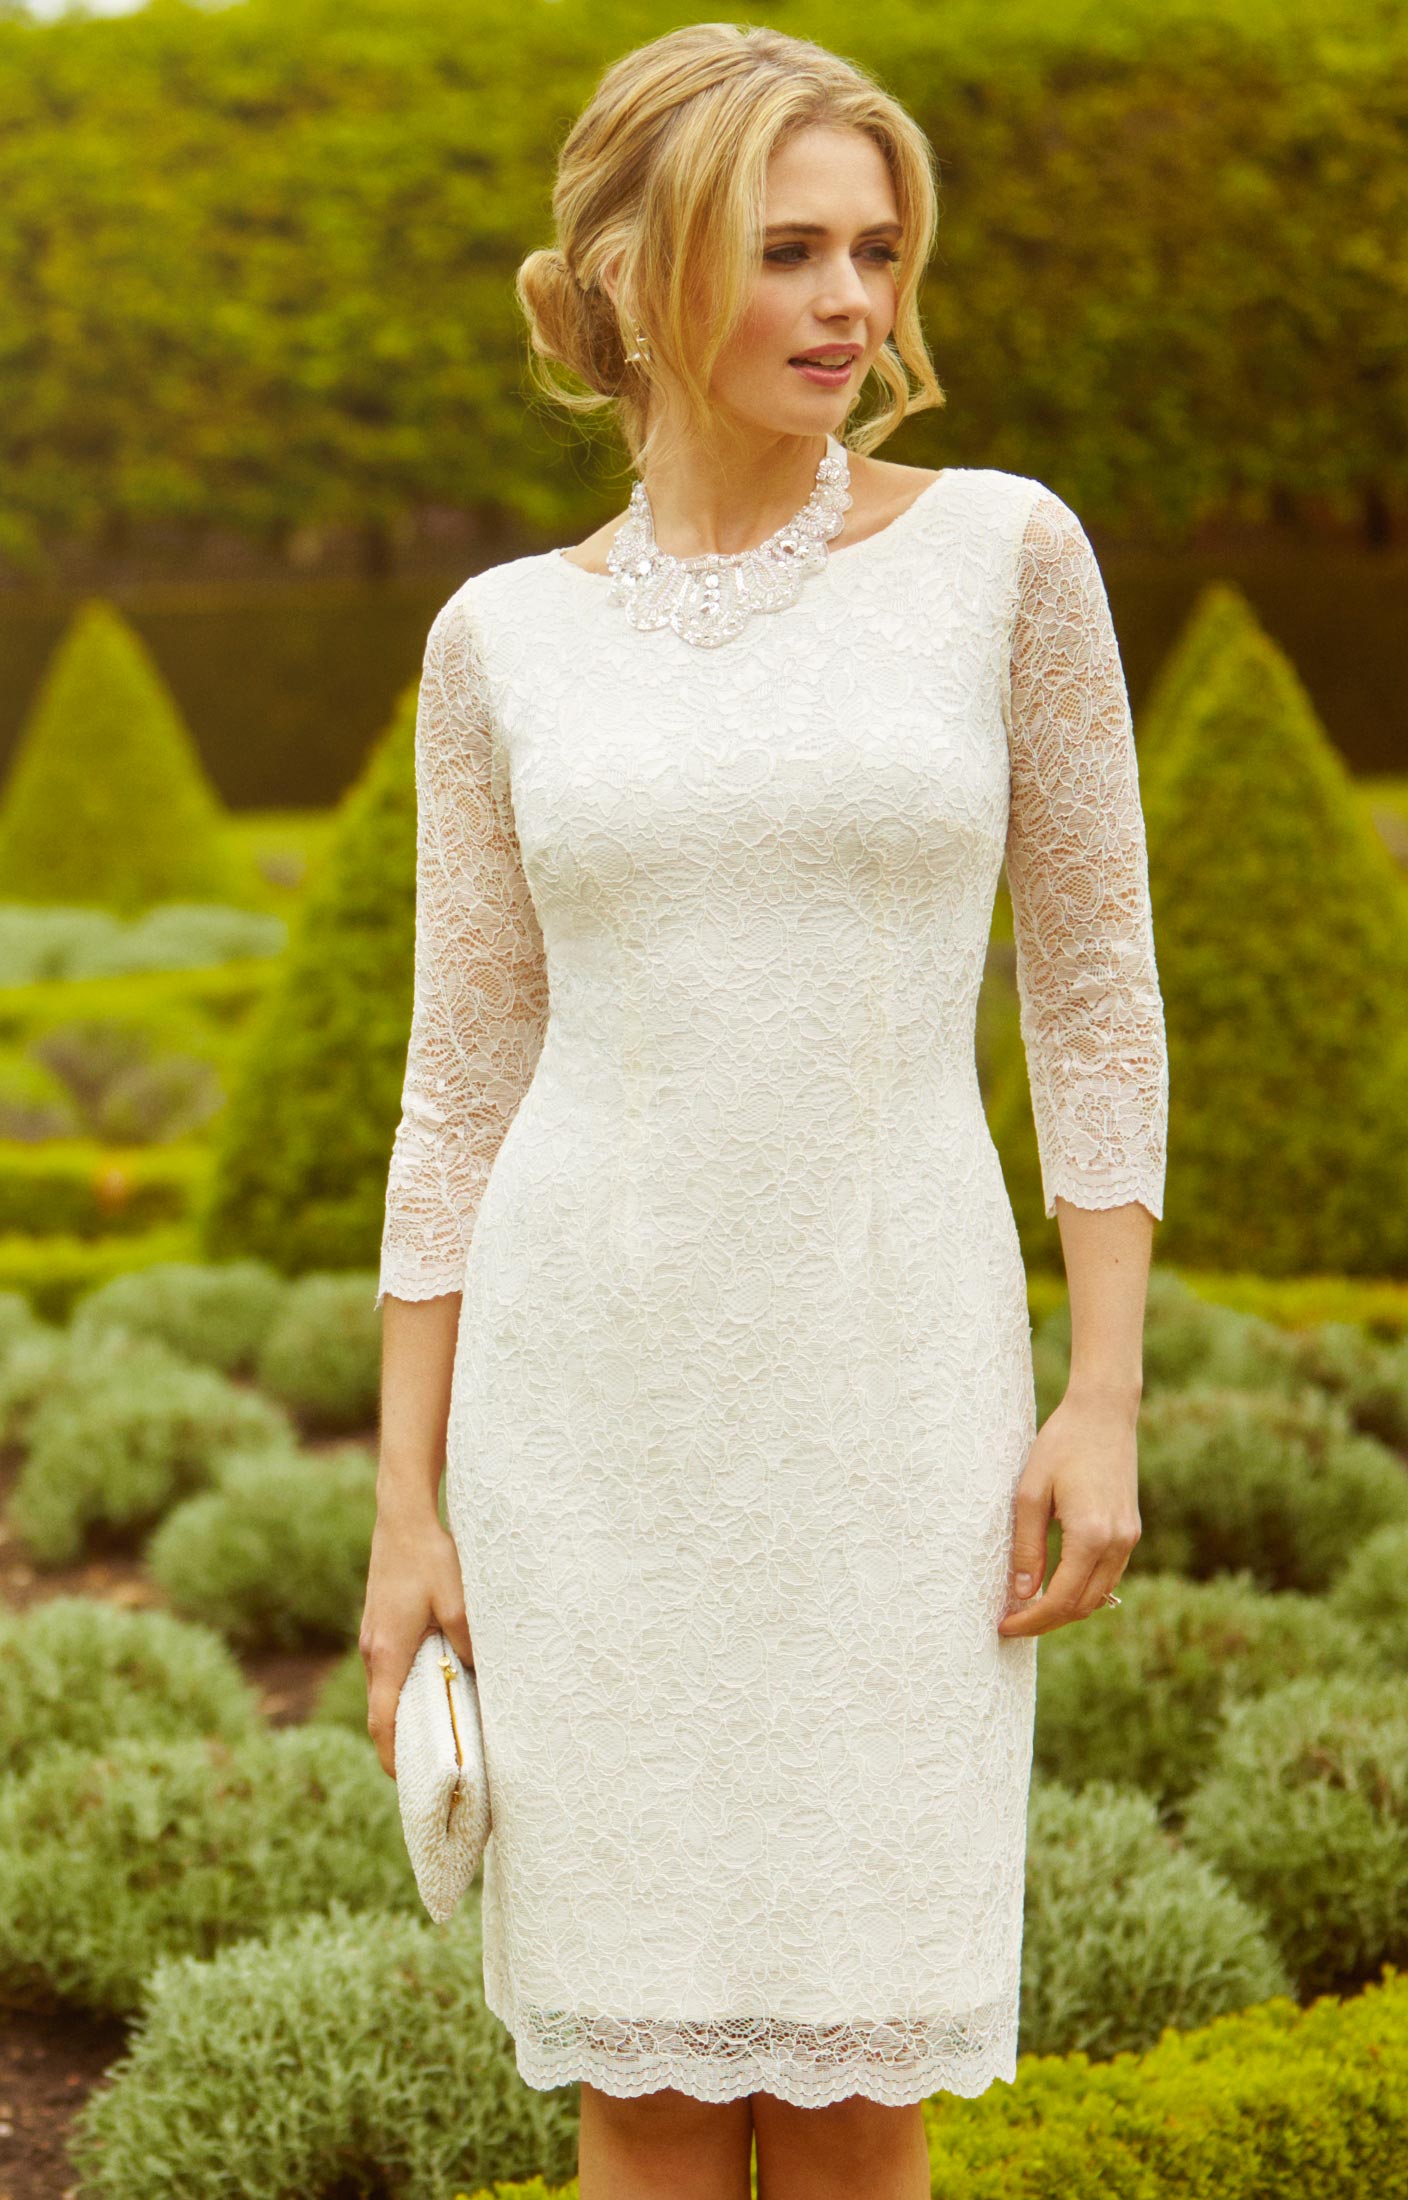 Katherine Lace Wedding Dress Ivory